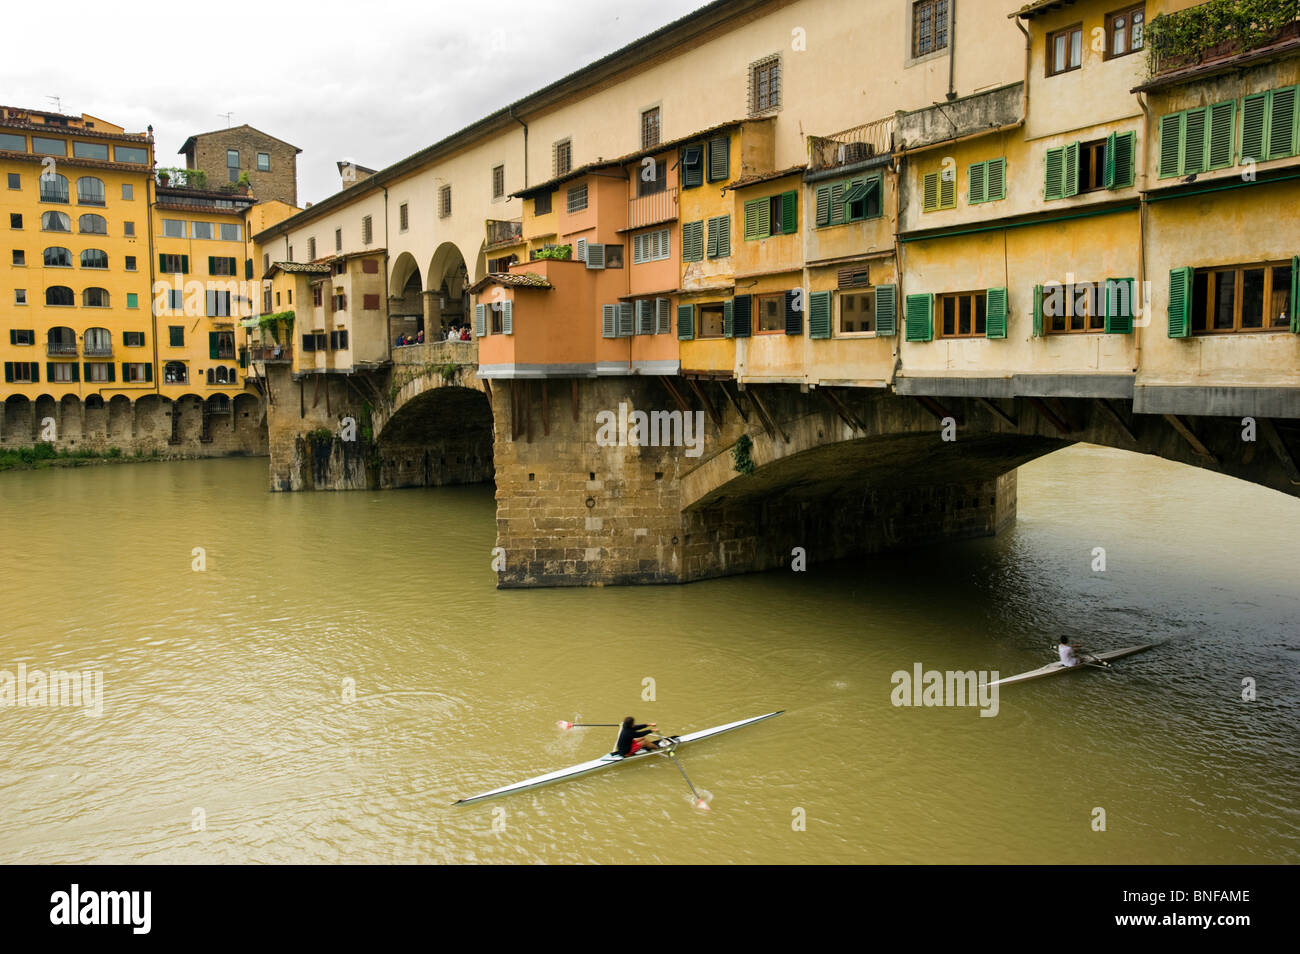 Le Ponte Vecchio, pont médiéval sur la rivière Arno, à Florence, en Italie. Banque D'Images